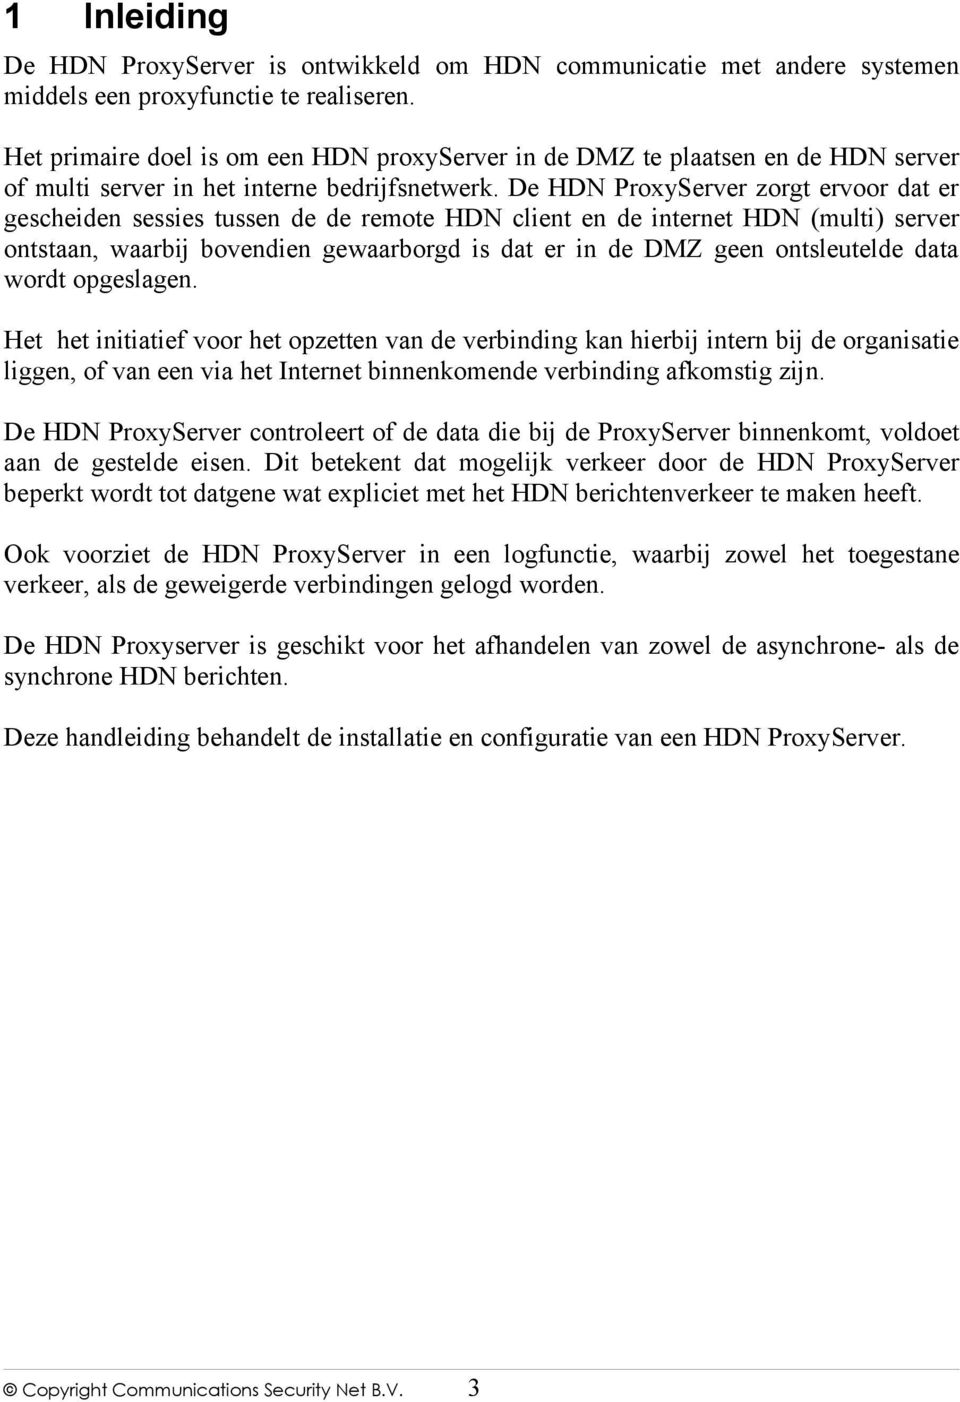 De HDN ProxyServer zorgt ervoor dat er gescheiden sessies tussen de de remote HDN client en de internet HDN (multi) server ontstaan, waarbij bovendien gewaarborgd is dat er in de DMZ geen